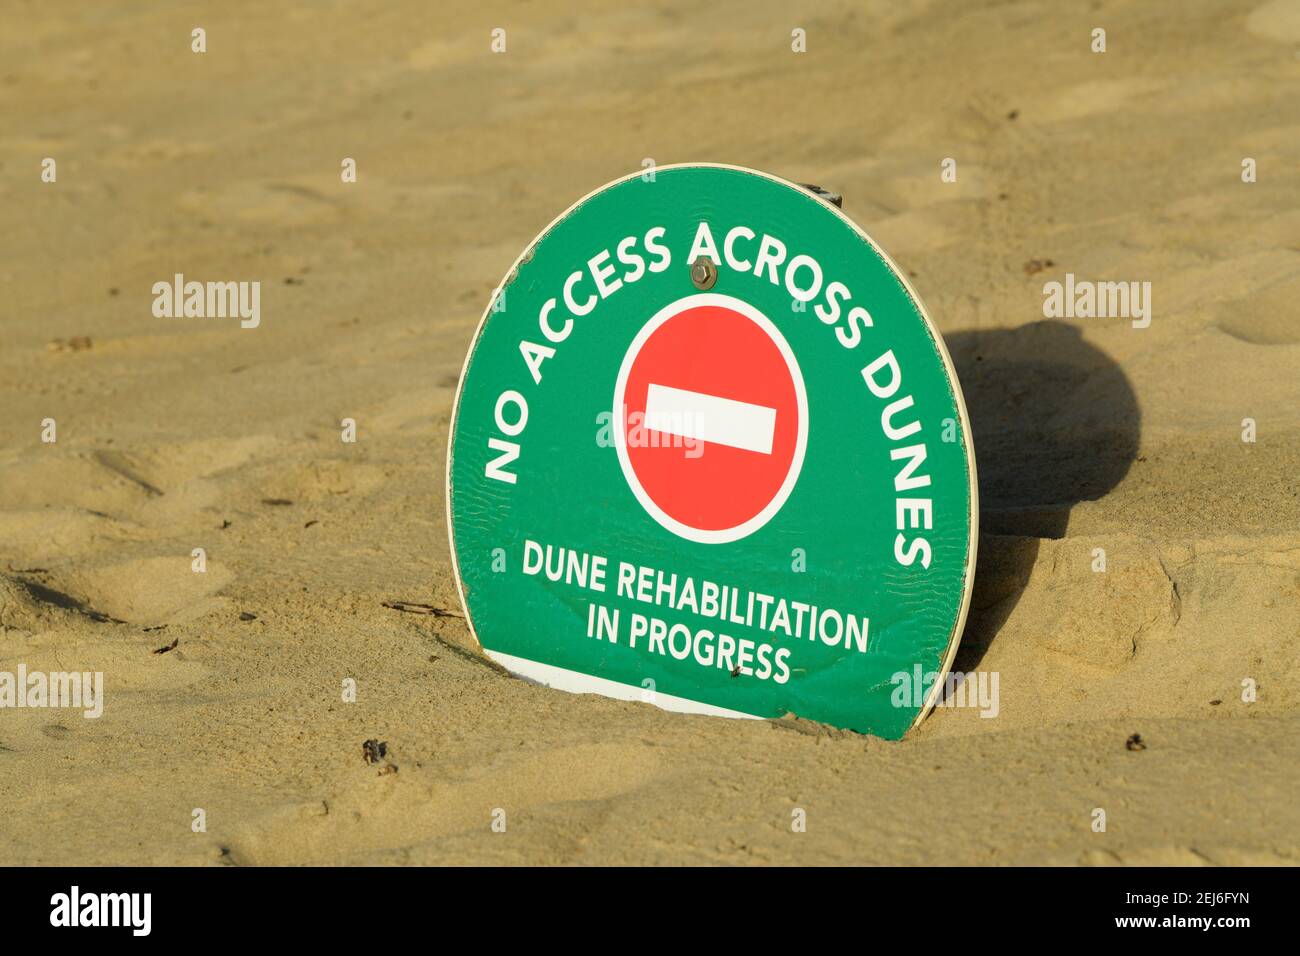 Strandmanagement, Küstenschutz, Dünenrehabilitation, Schild, öffentliche Bekanntmachung, Durban, Südafrika, keine Beschilderung, Küstengebiet, Umwelt Stockfoto